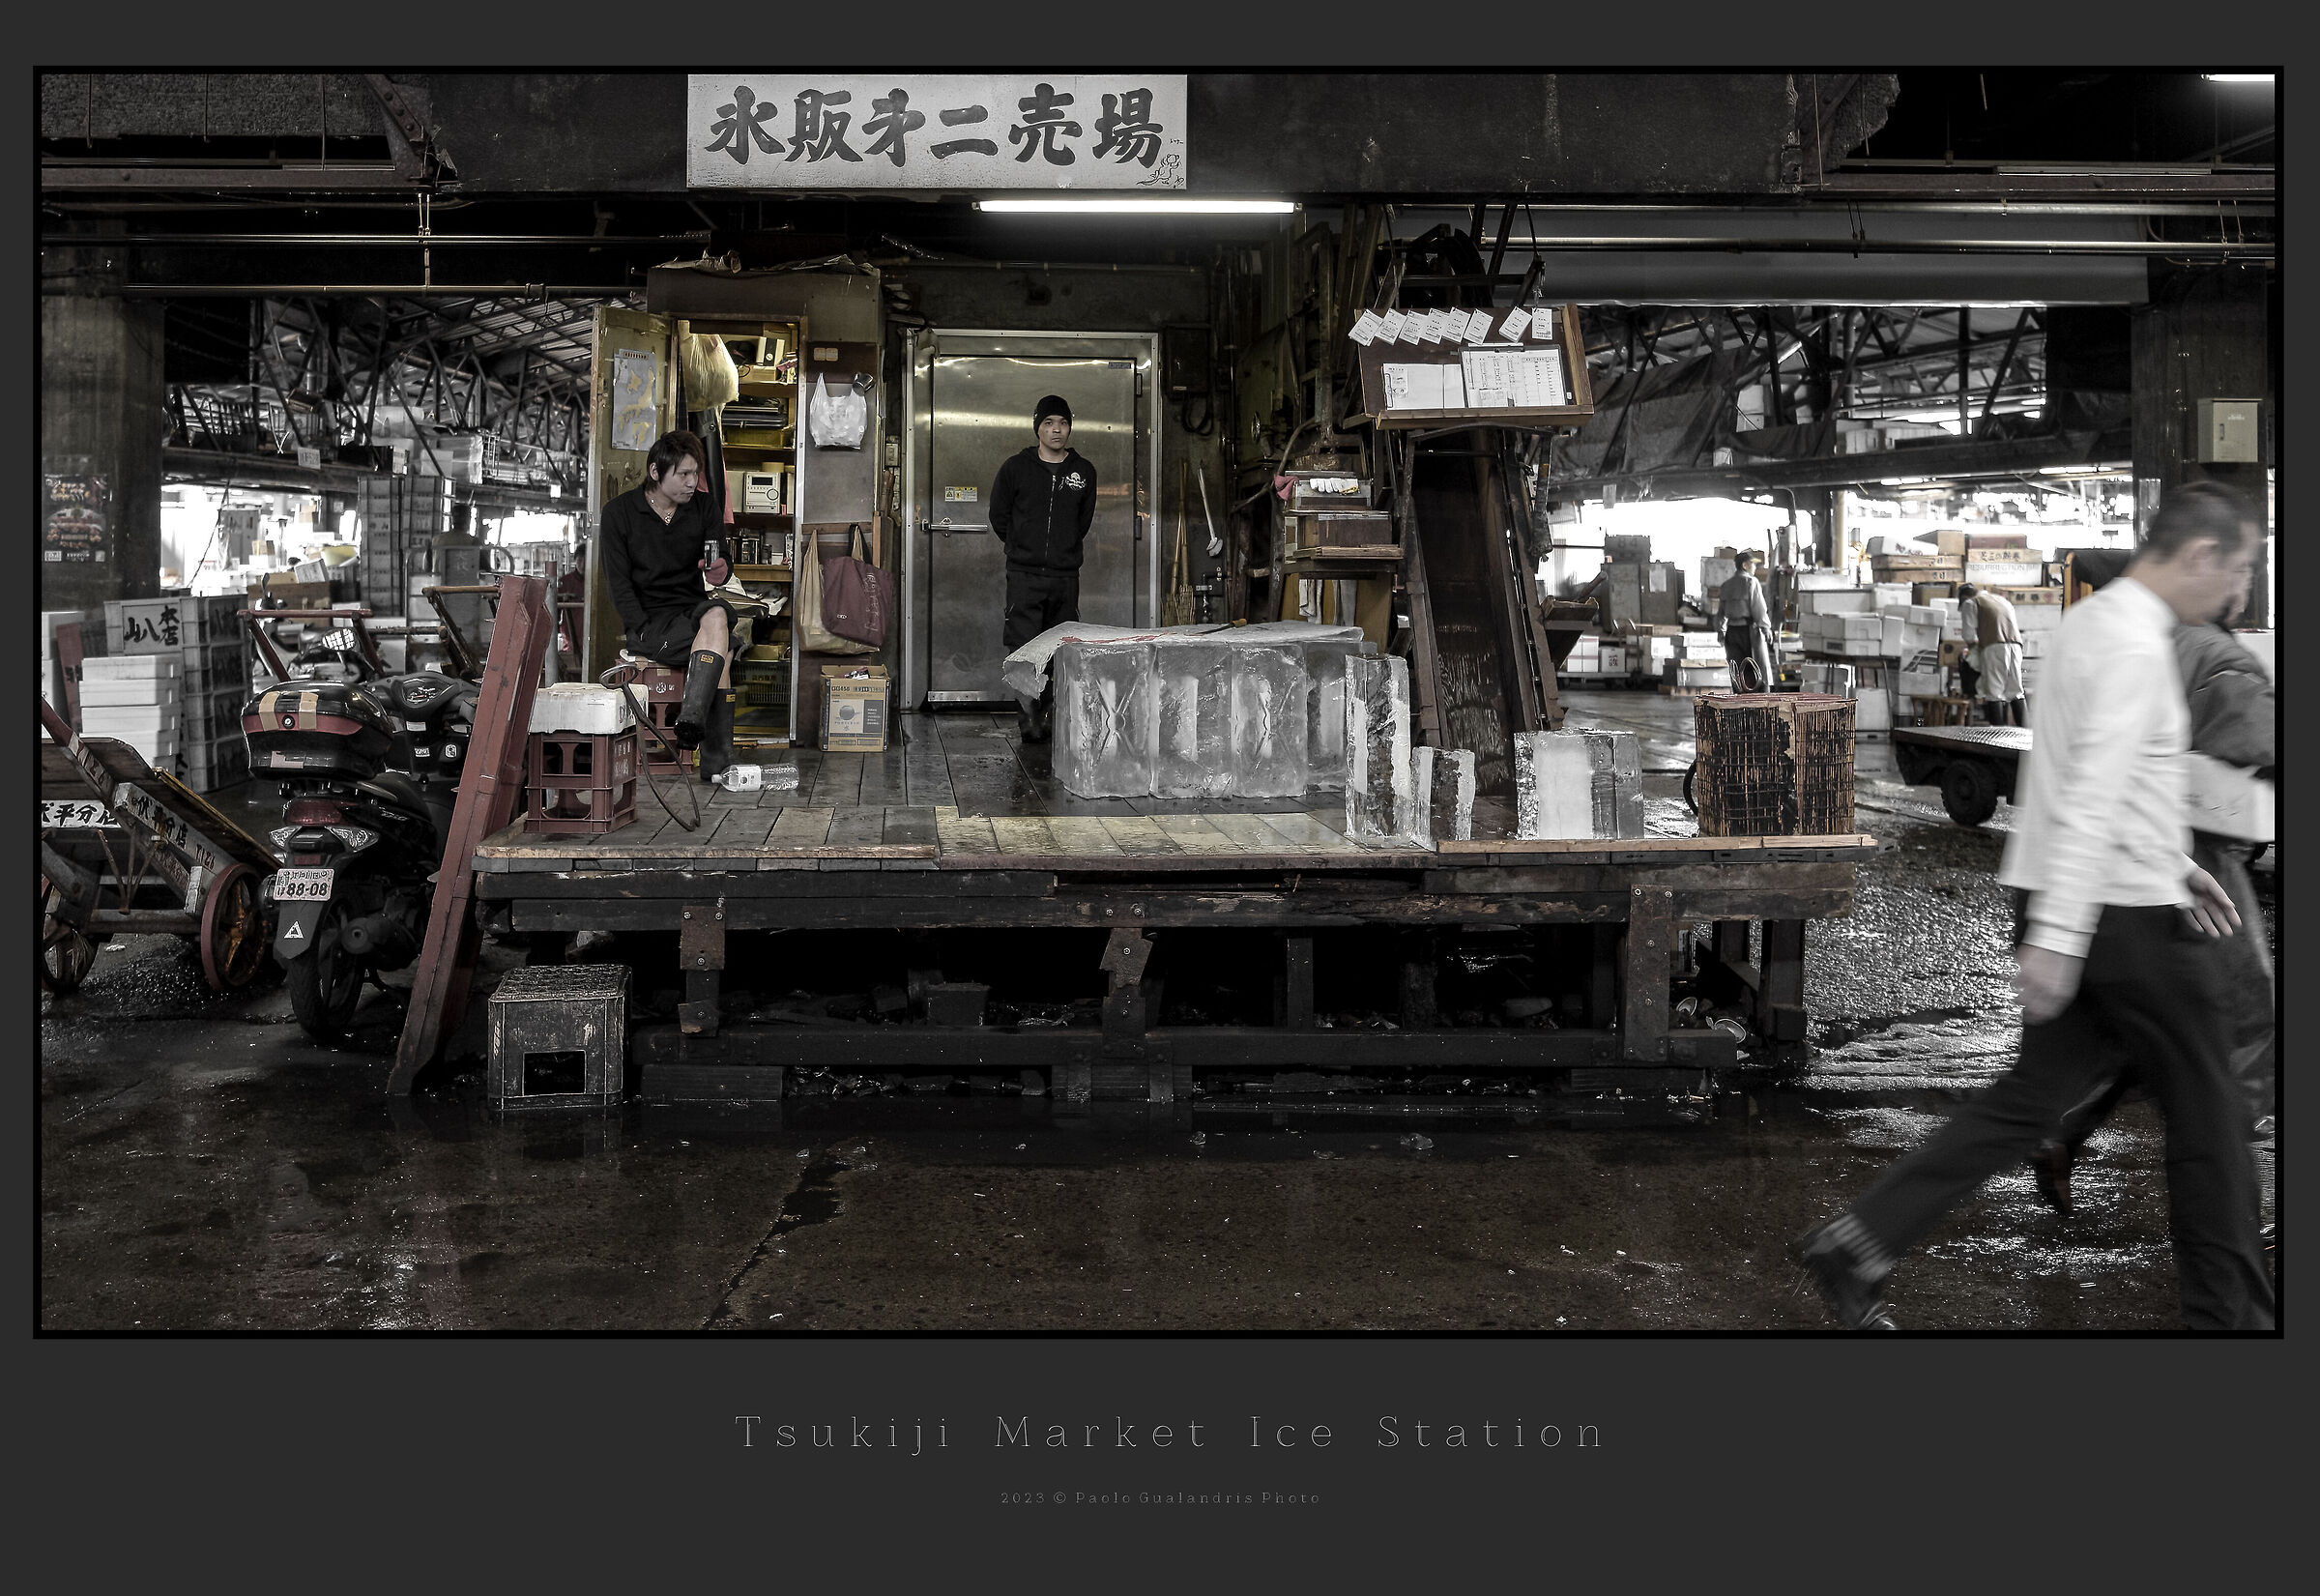 Tsukiji Market Ice Station...